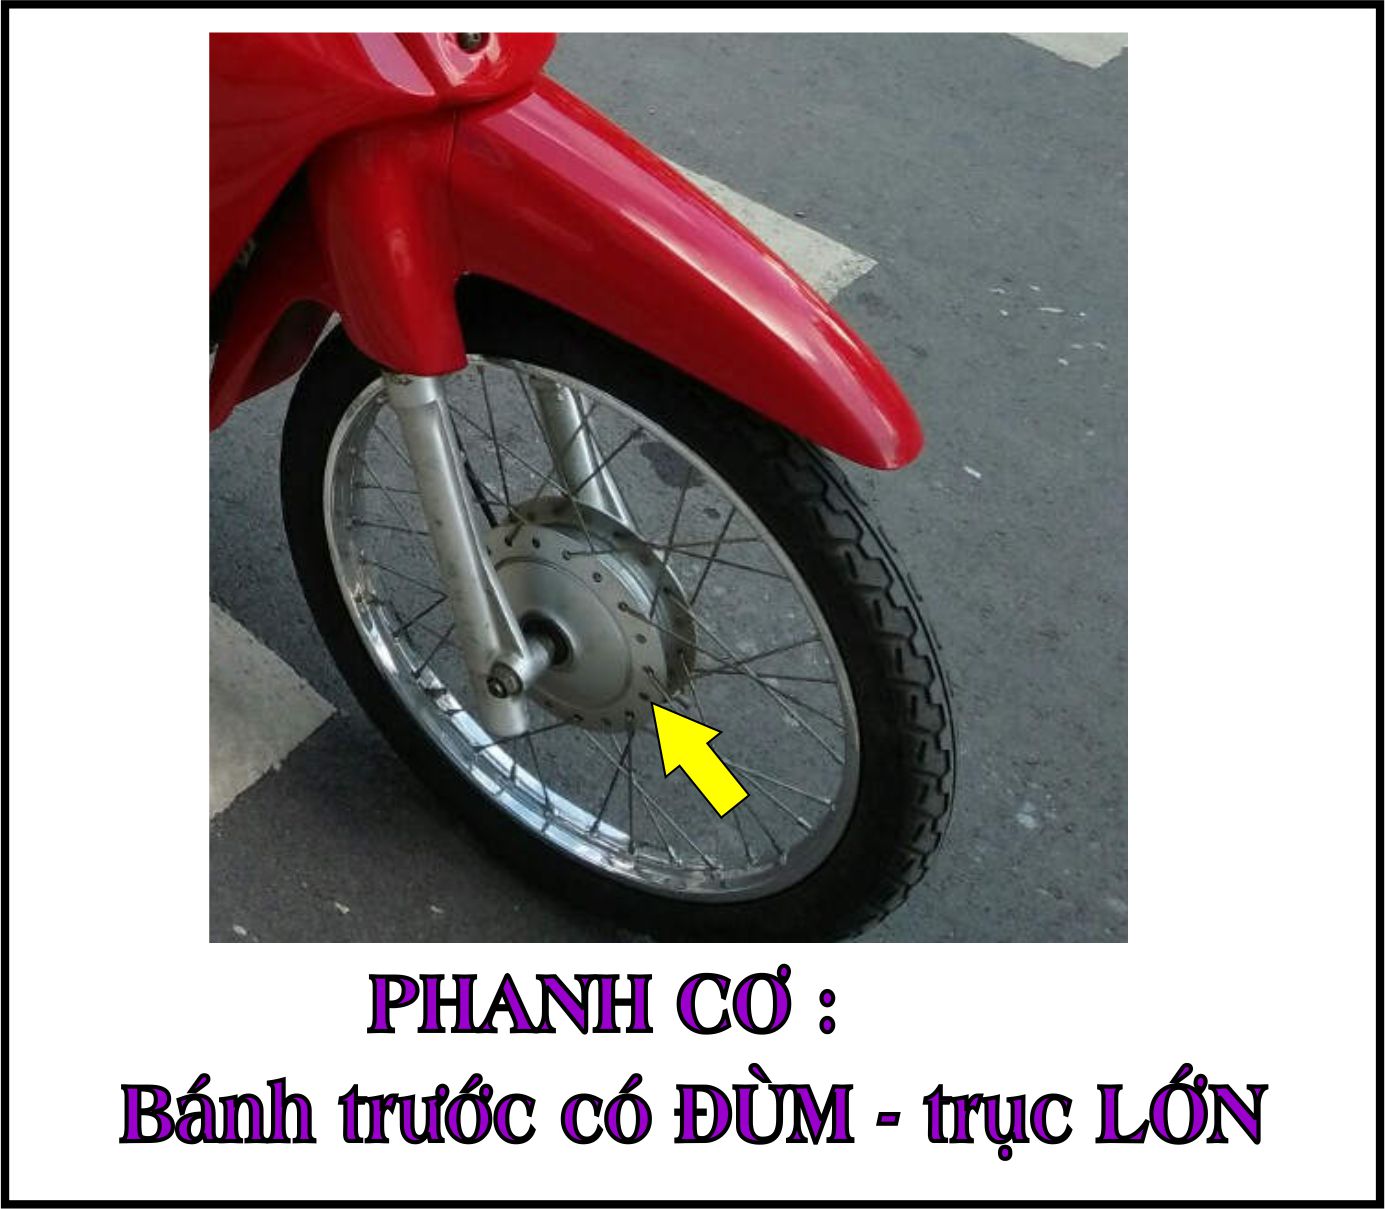 [ TẶNG TEM] Bộ vỏ nhựa màu XANH DA cho xe Wave 110 - Wave  Thái  - Wave Zx đời 1997 đến 2006- TKB-561(8047)